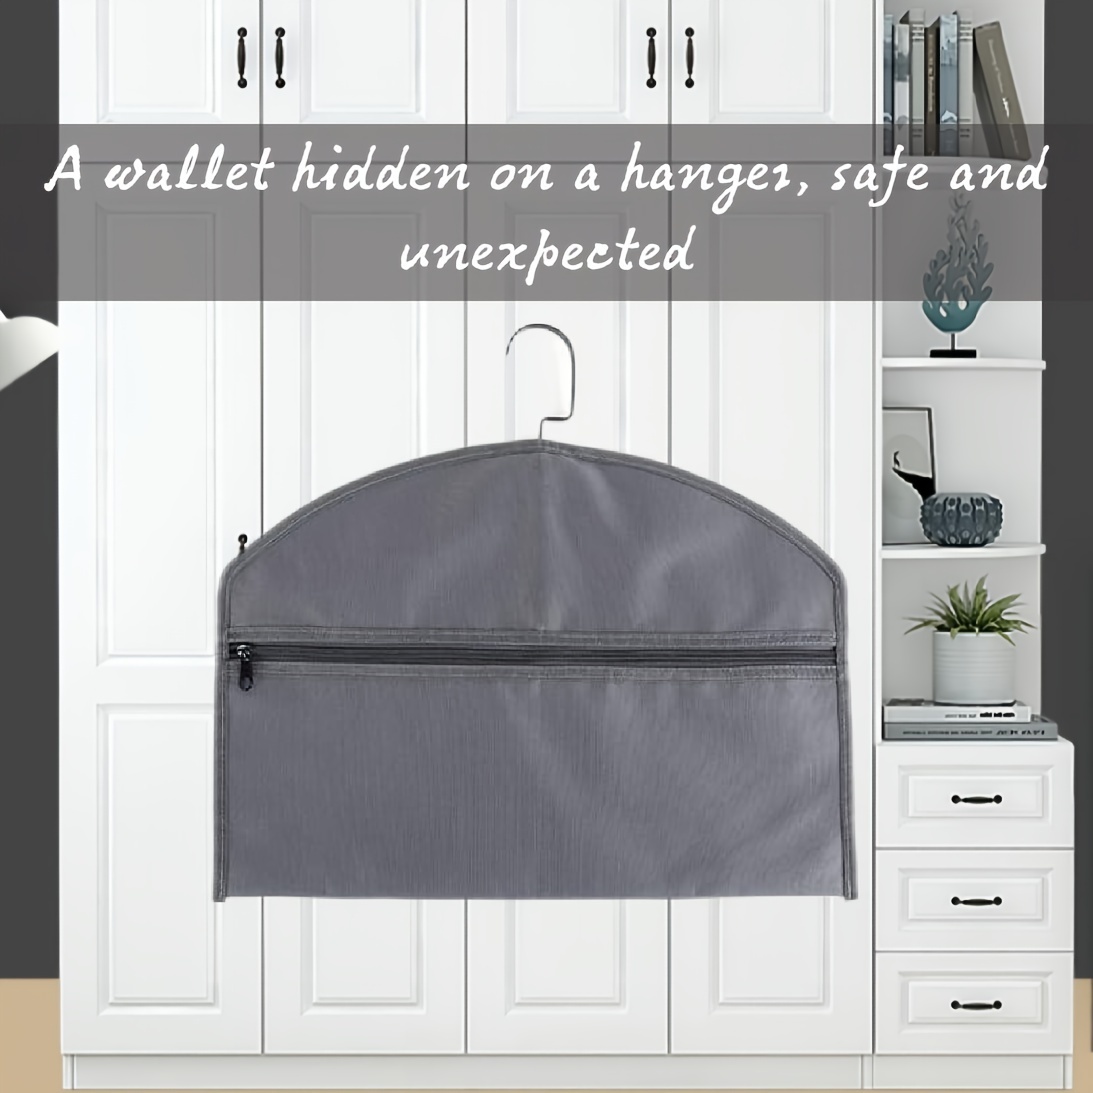 Hanger Diversion Safe by Stash-it, Hidden Pocket Safe, Fits Under Hanging  Clothes with Pocket to Hide Valuables for Home or Travel